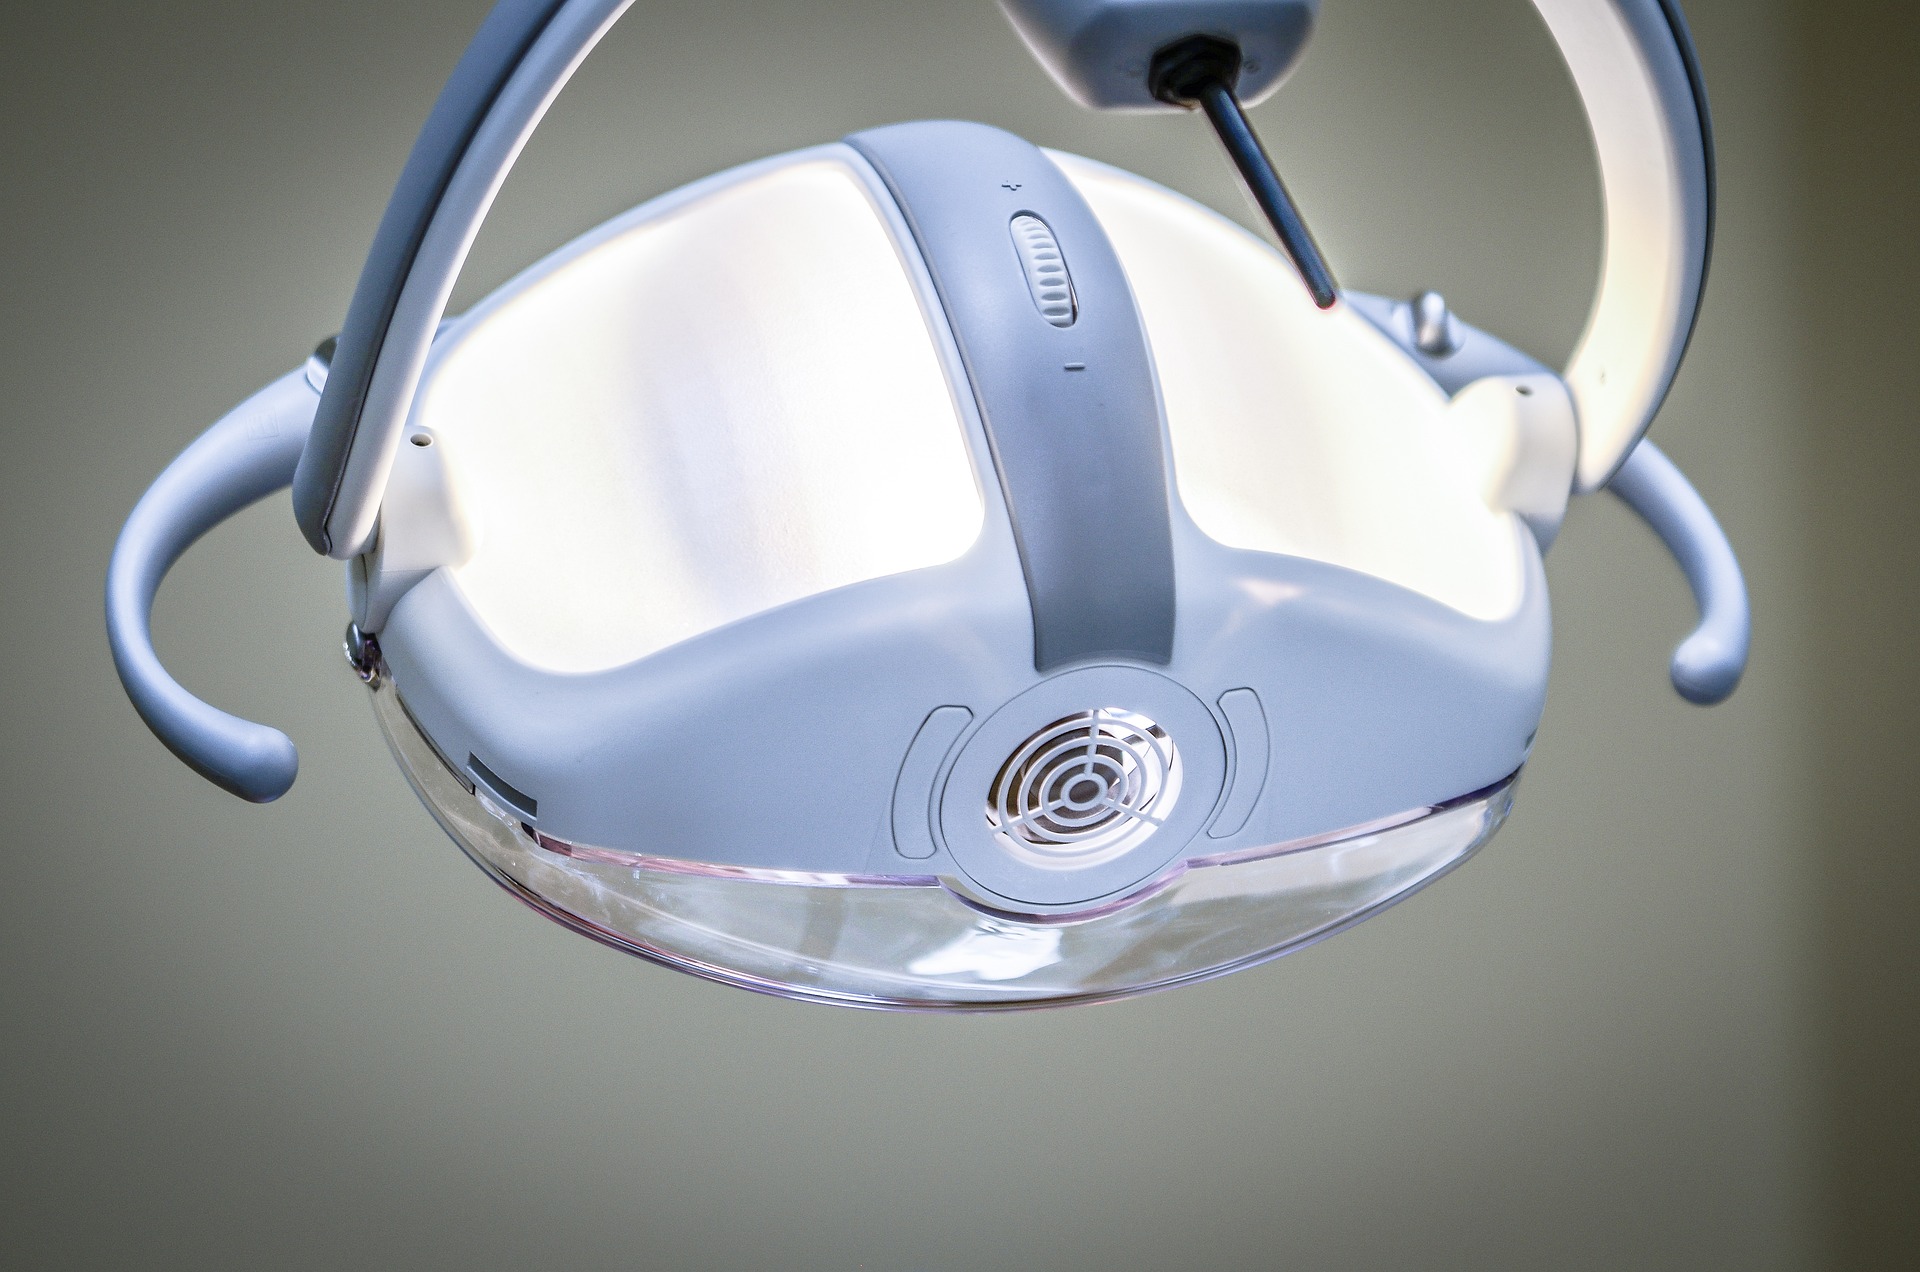 Rodzaje aparatów ortodontycznych stosowanych w ortodoncji estetycznej